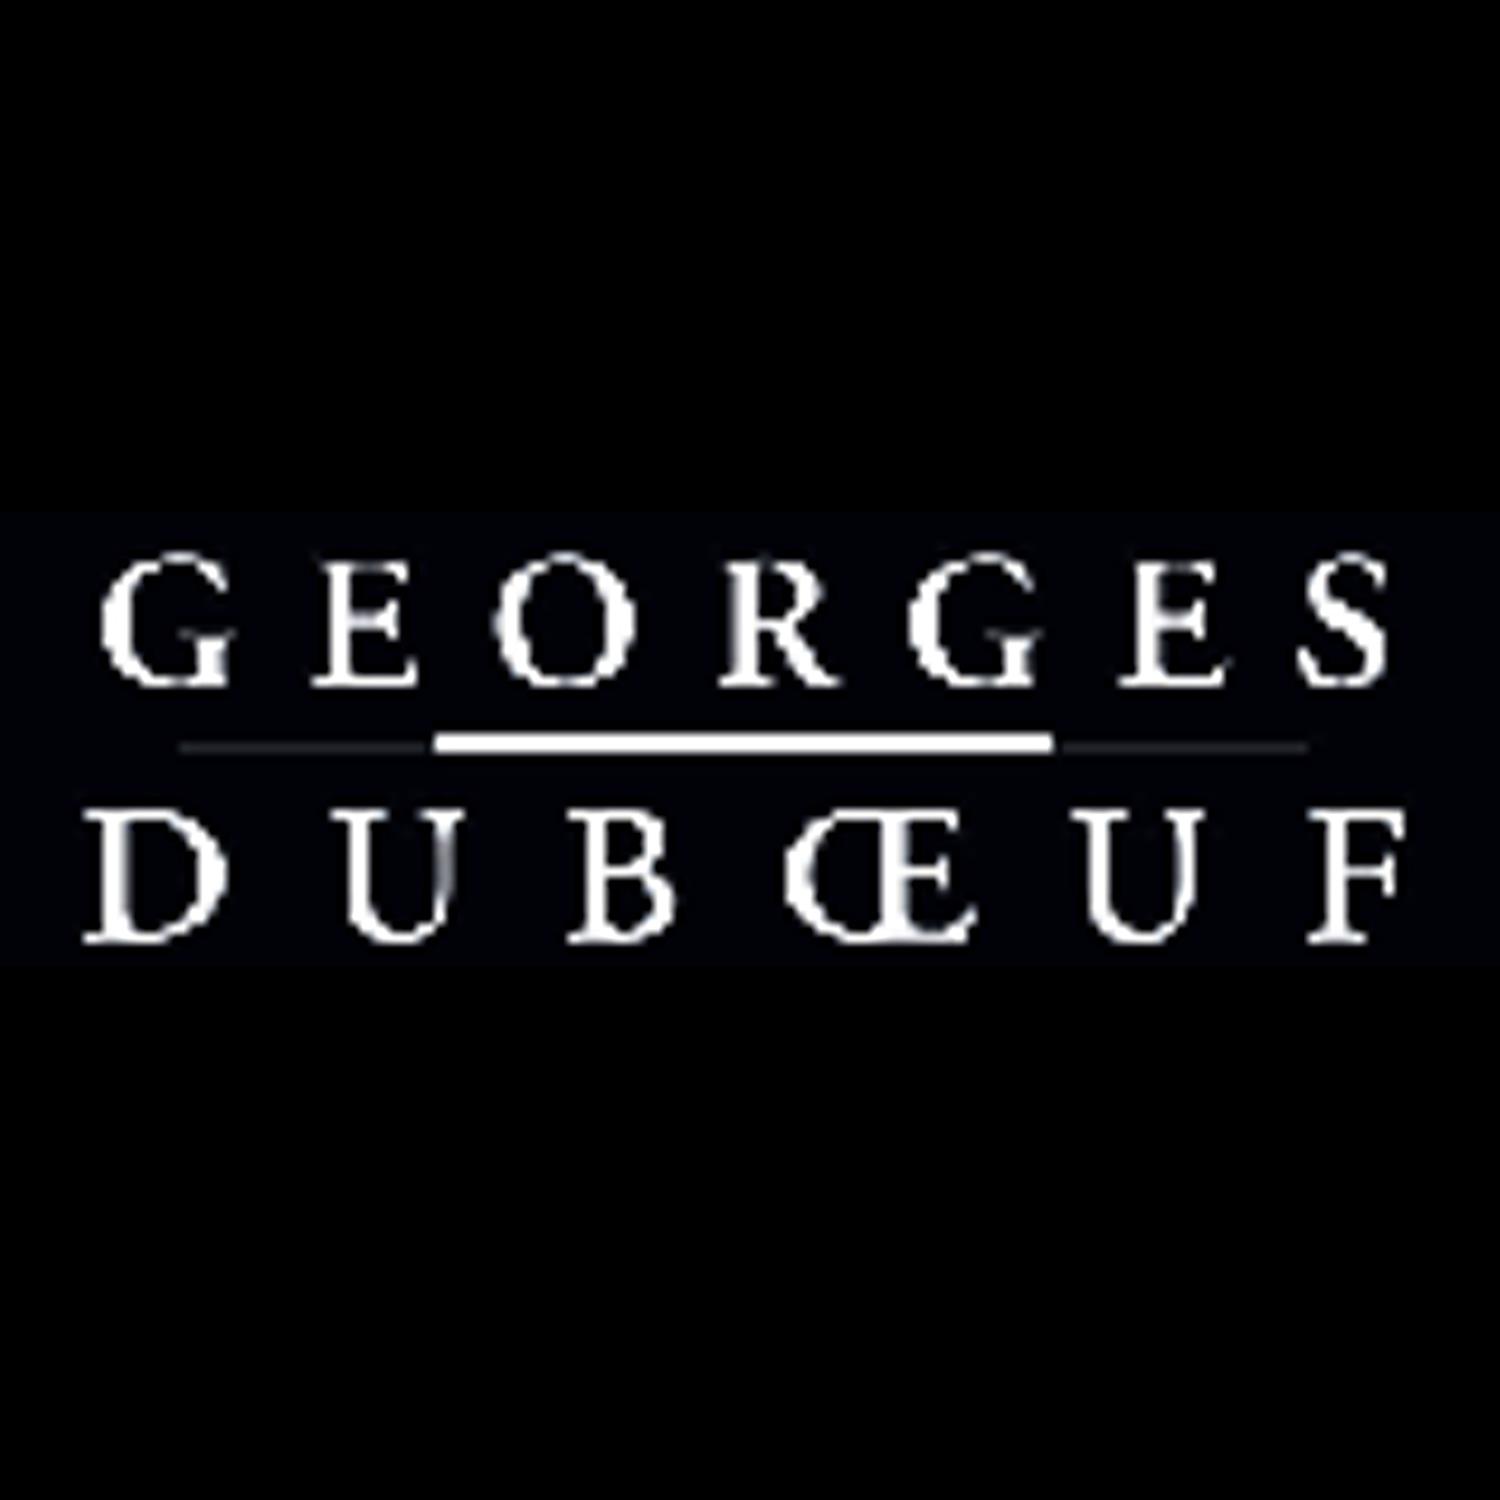 乔治杜勃福酒庄 Georges Dubœuf